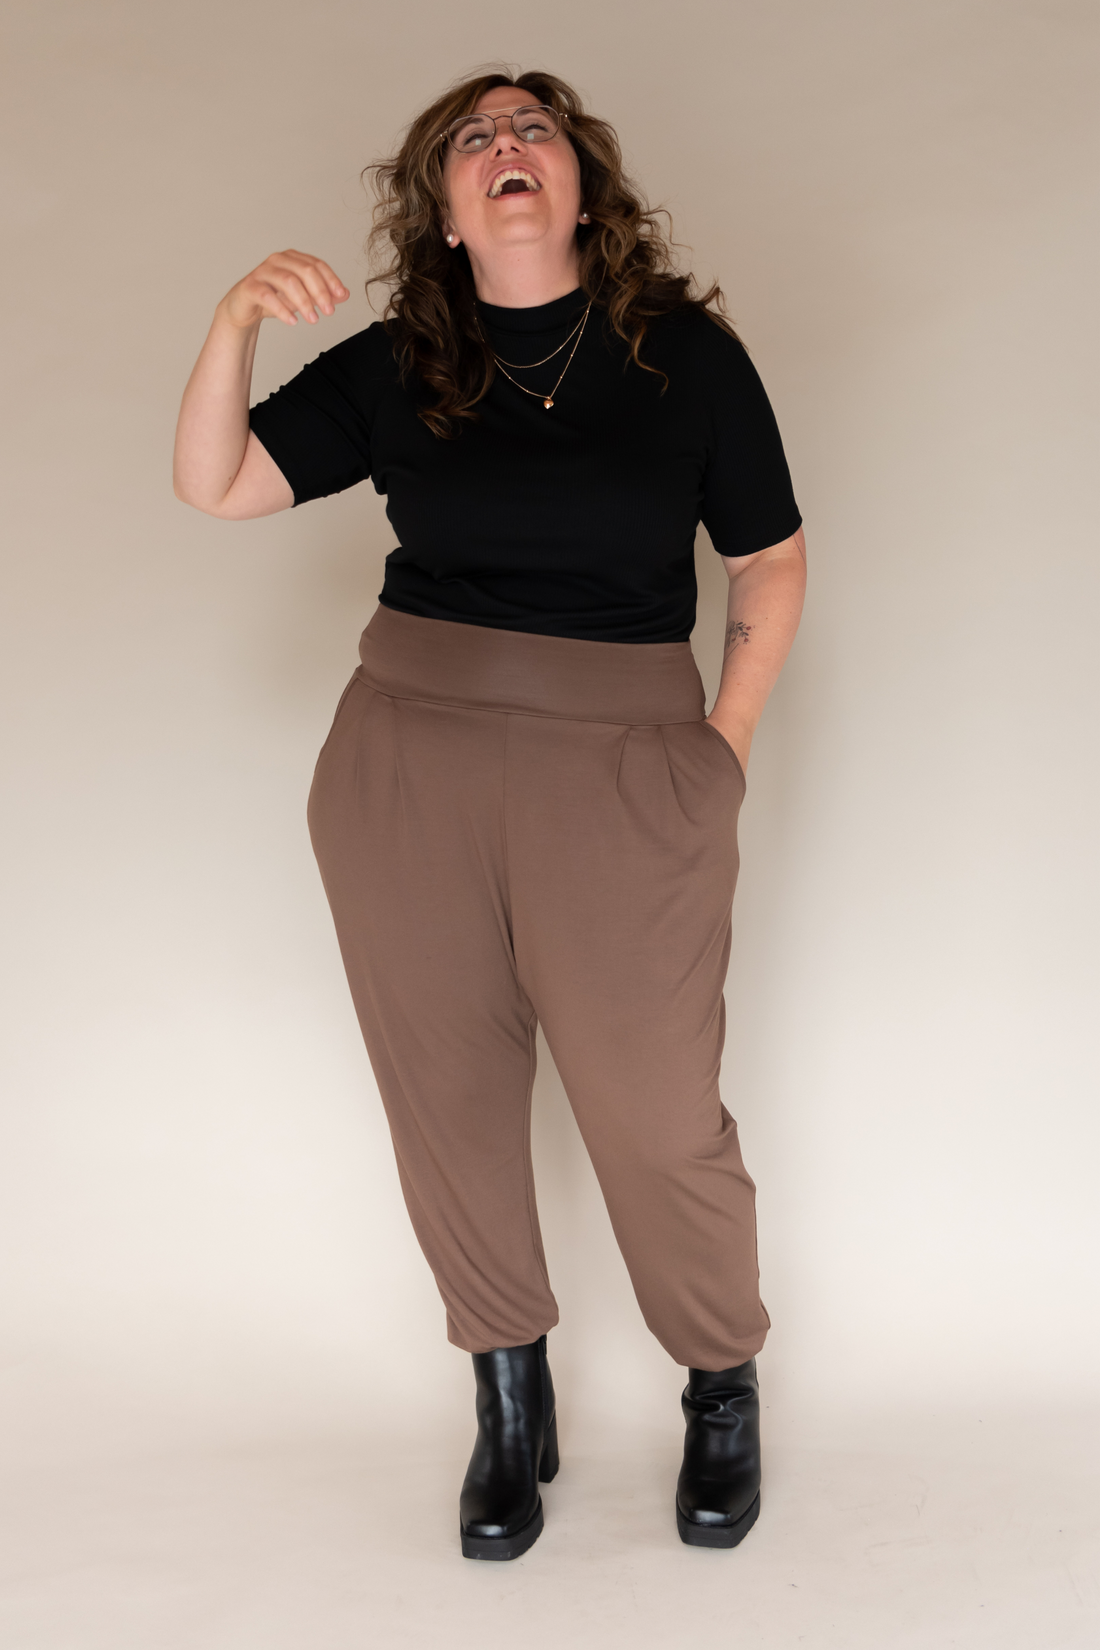 Pantalon ample avec poches sarouel brun beige muscade pour femmes fabriqué au Québec.